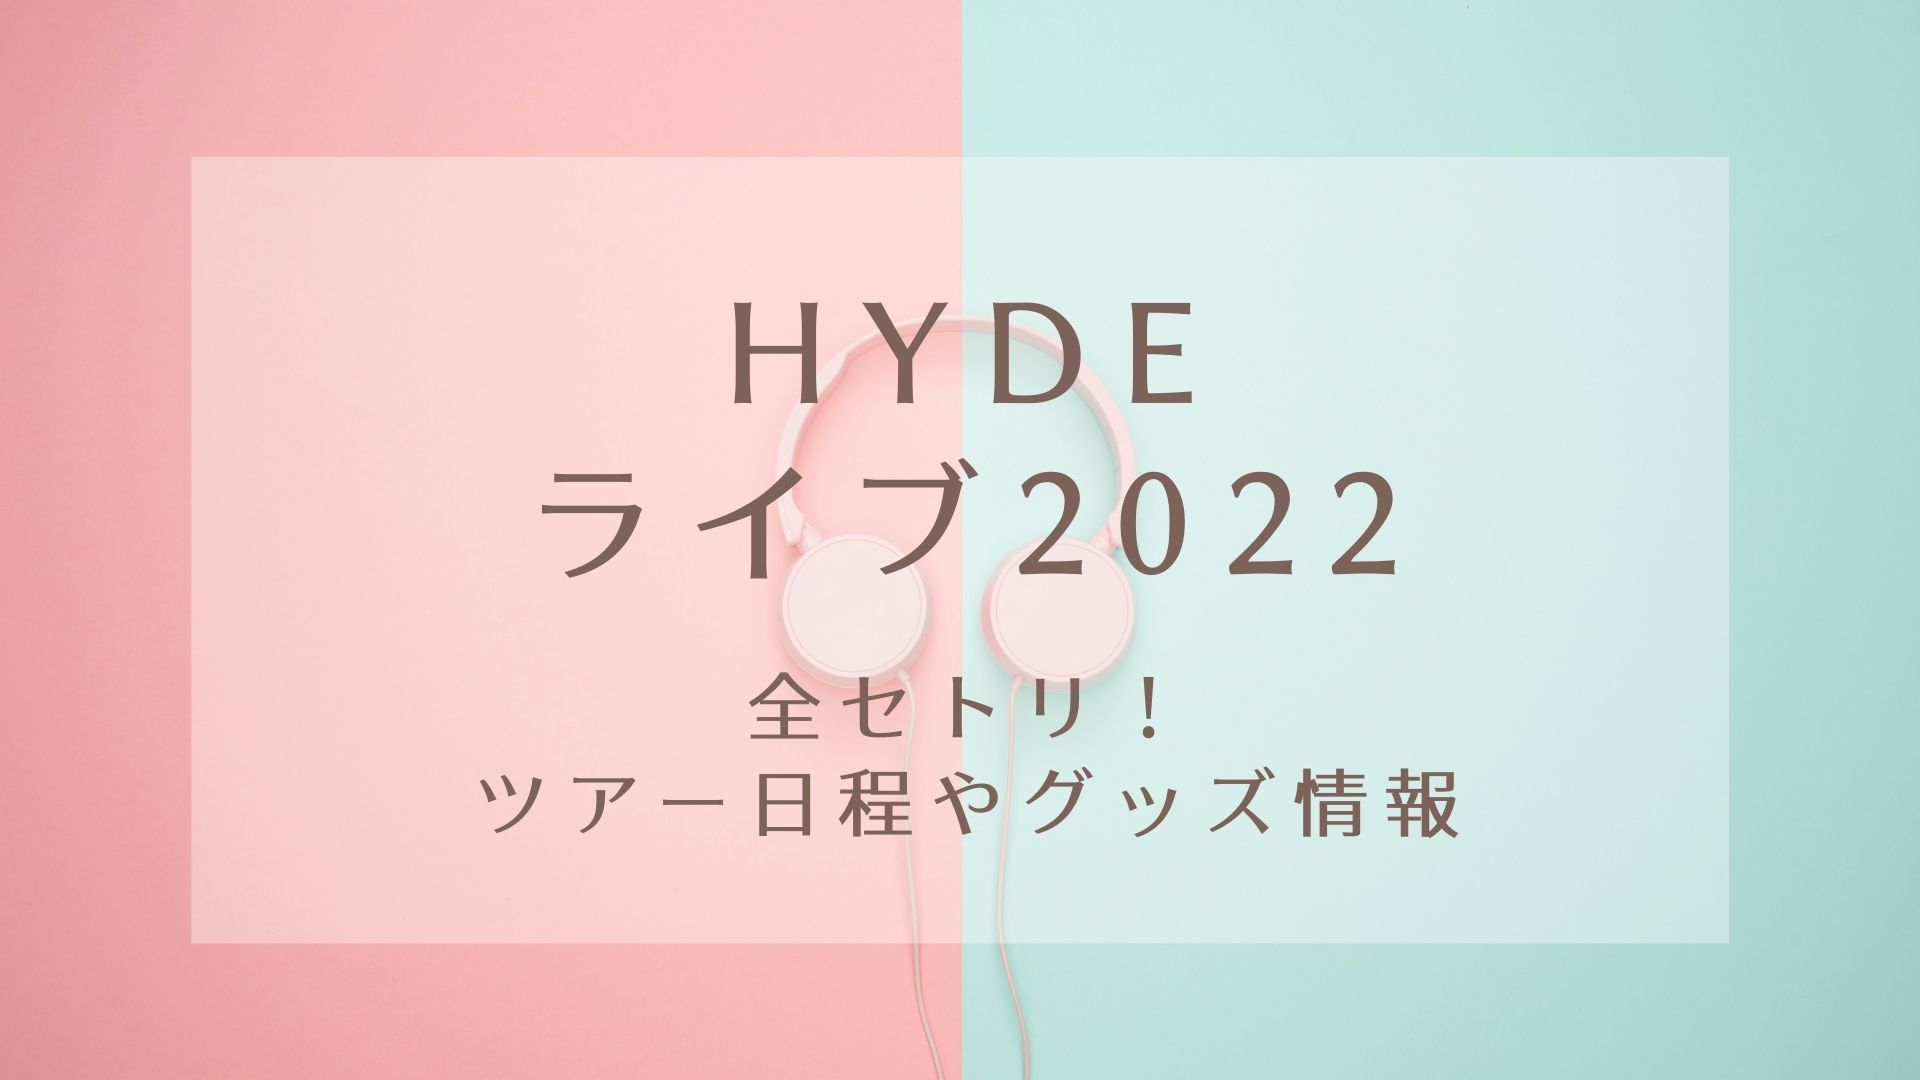 当店の記念日 HYDE LIVE 2022 スマホリング